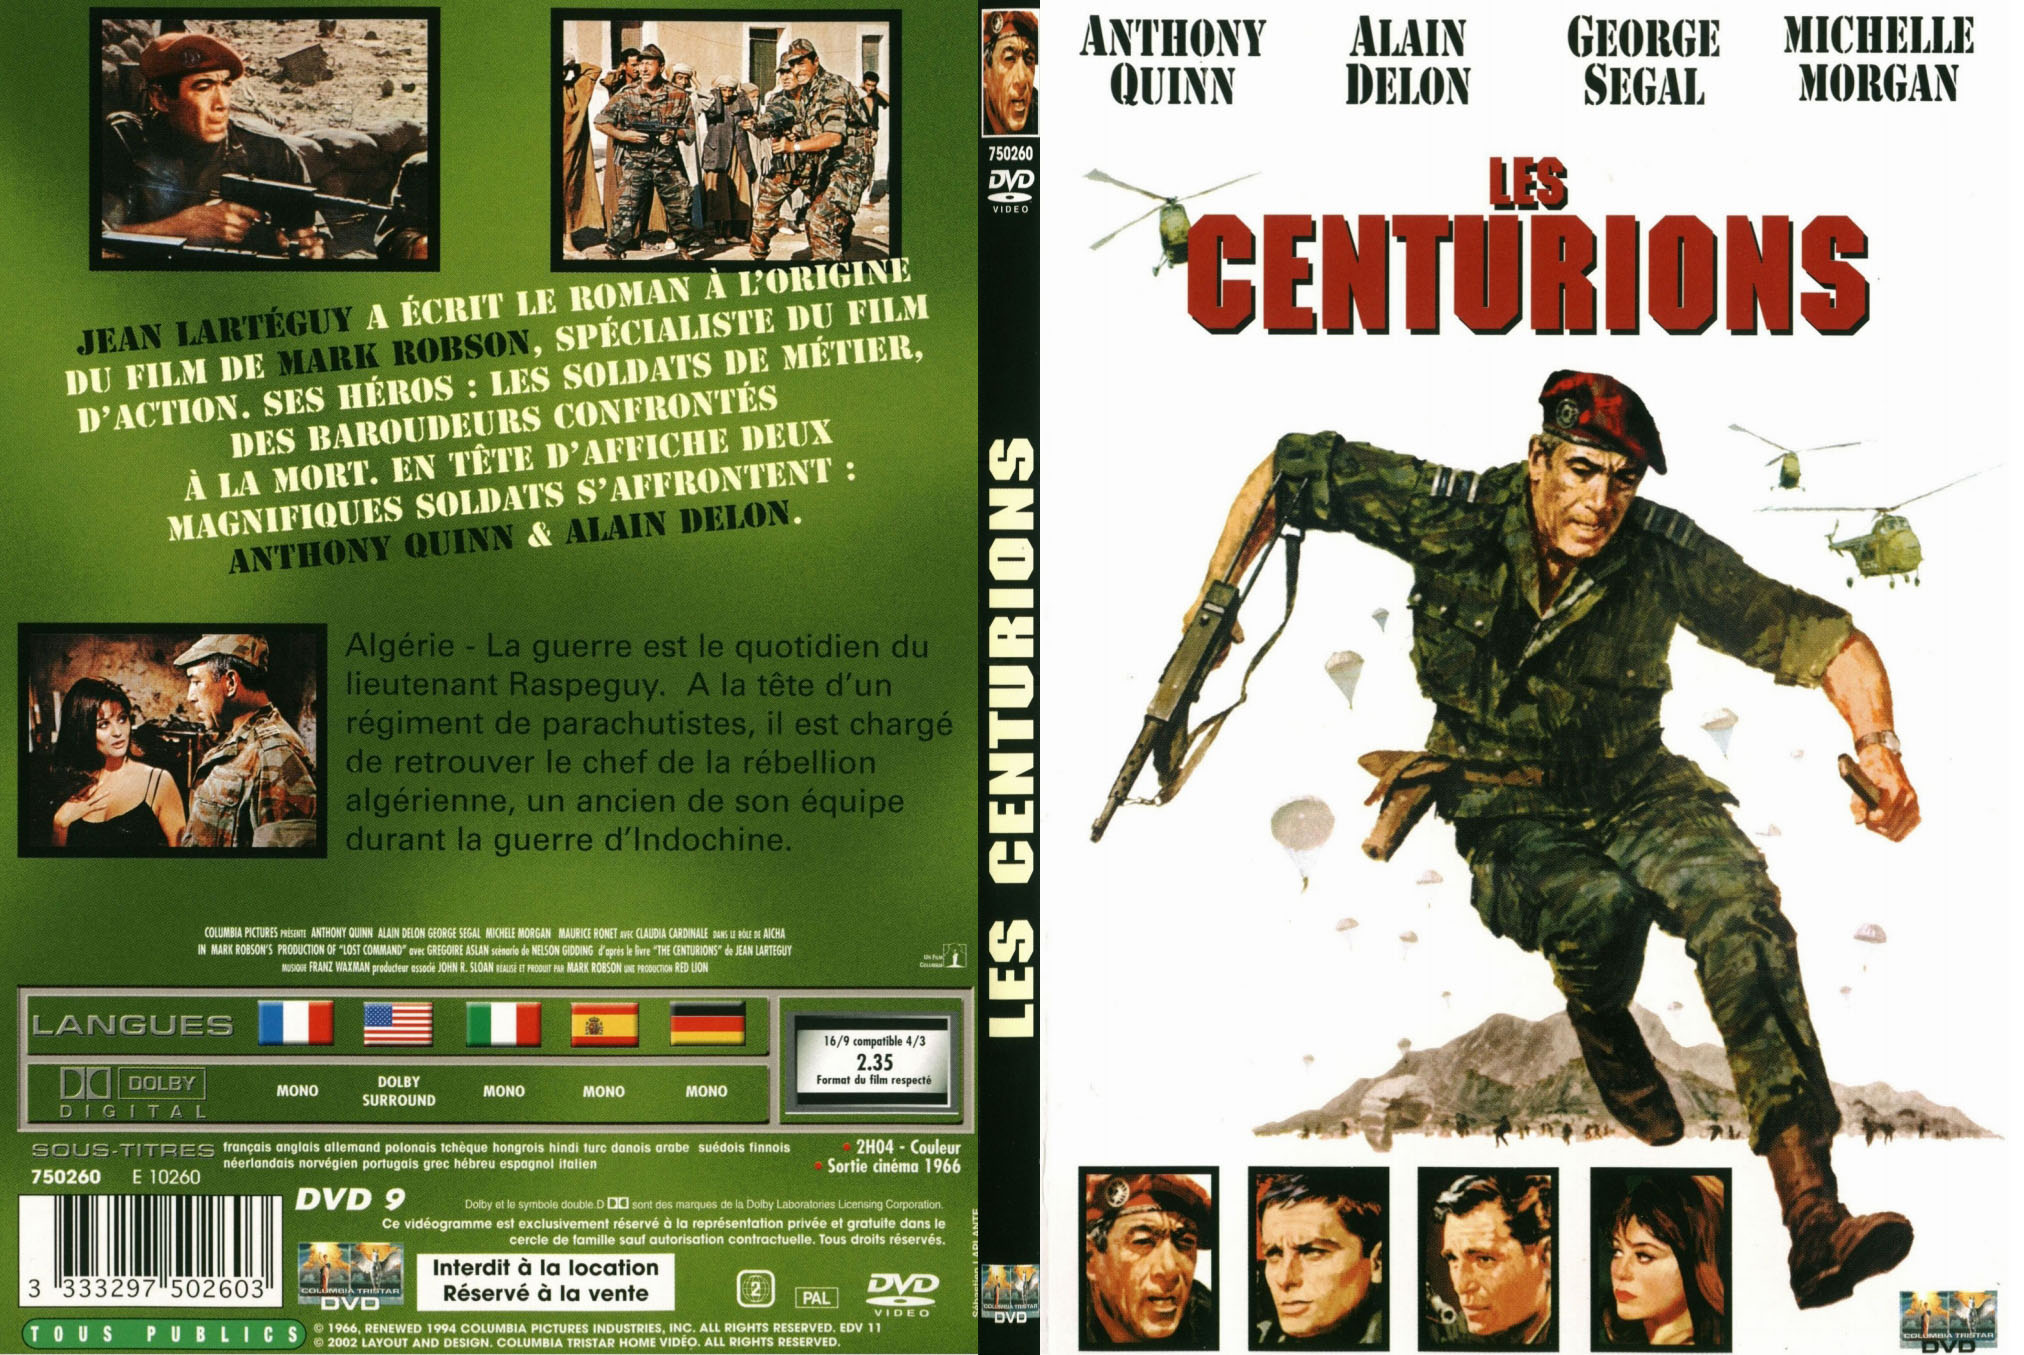 Jaquette DVD Les centurions - SLIM